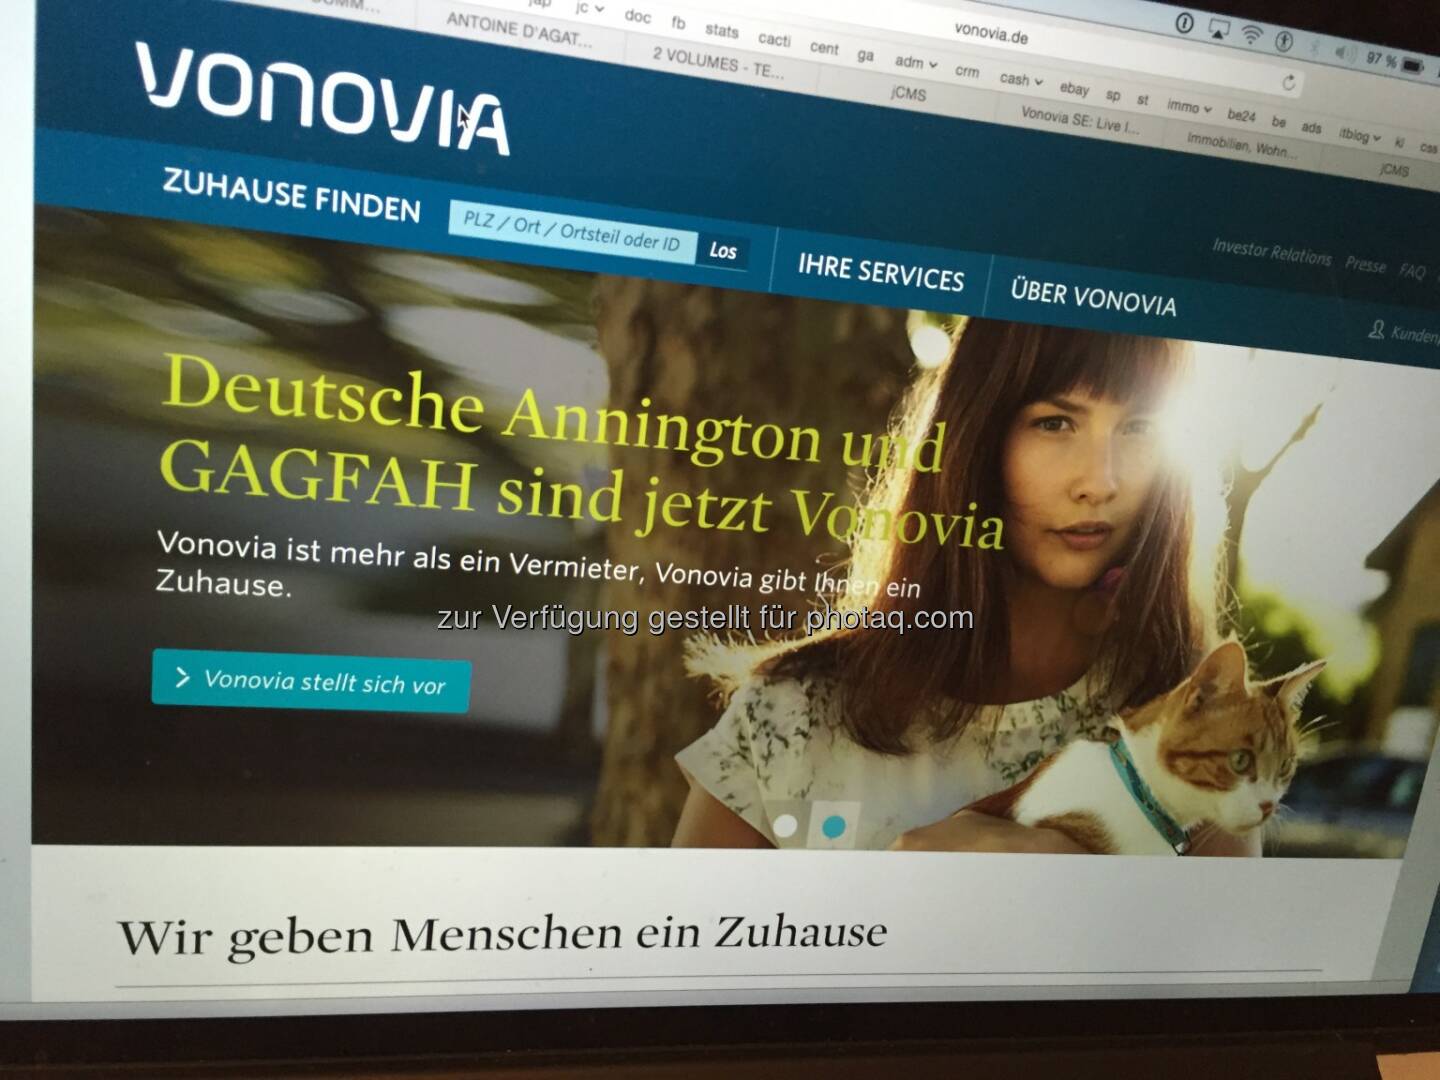 Aus Deutsche Annington wird Vonovia, per 21.9. auch im DAX, Screenshot der Homepage 7.9.2015